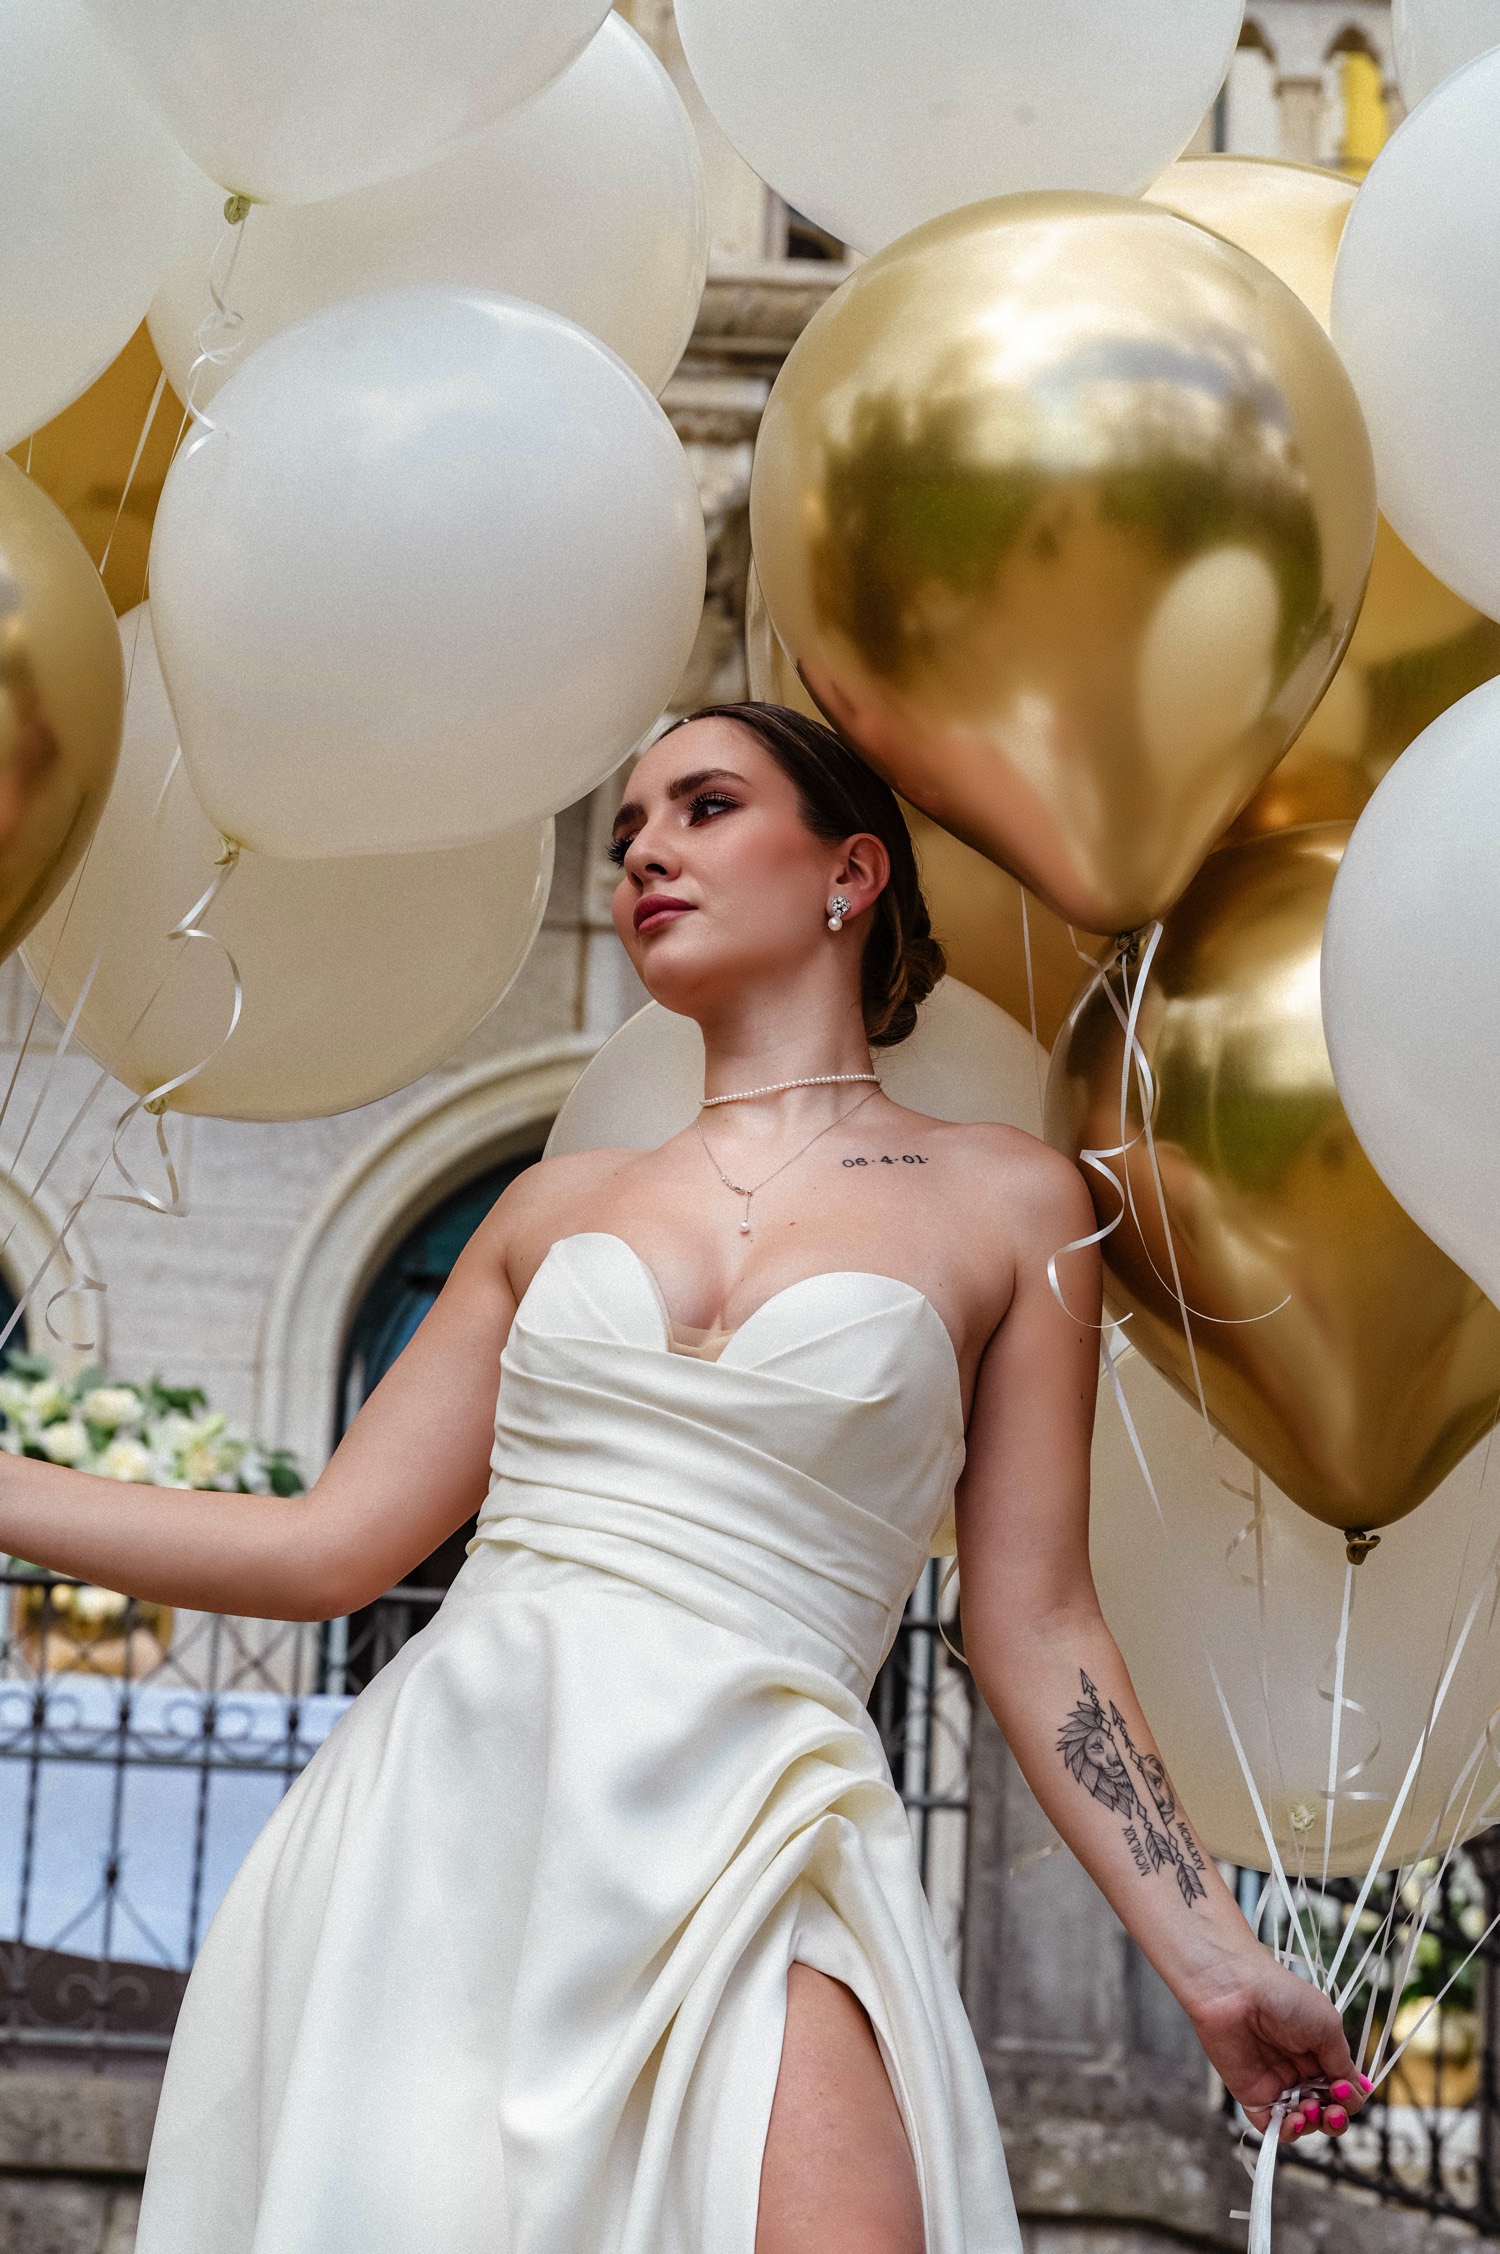 Extravagant editorial: Vjenčanje kao iz bajke!